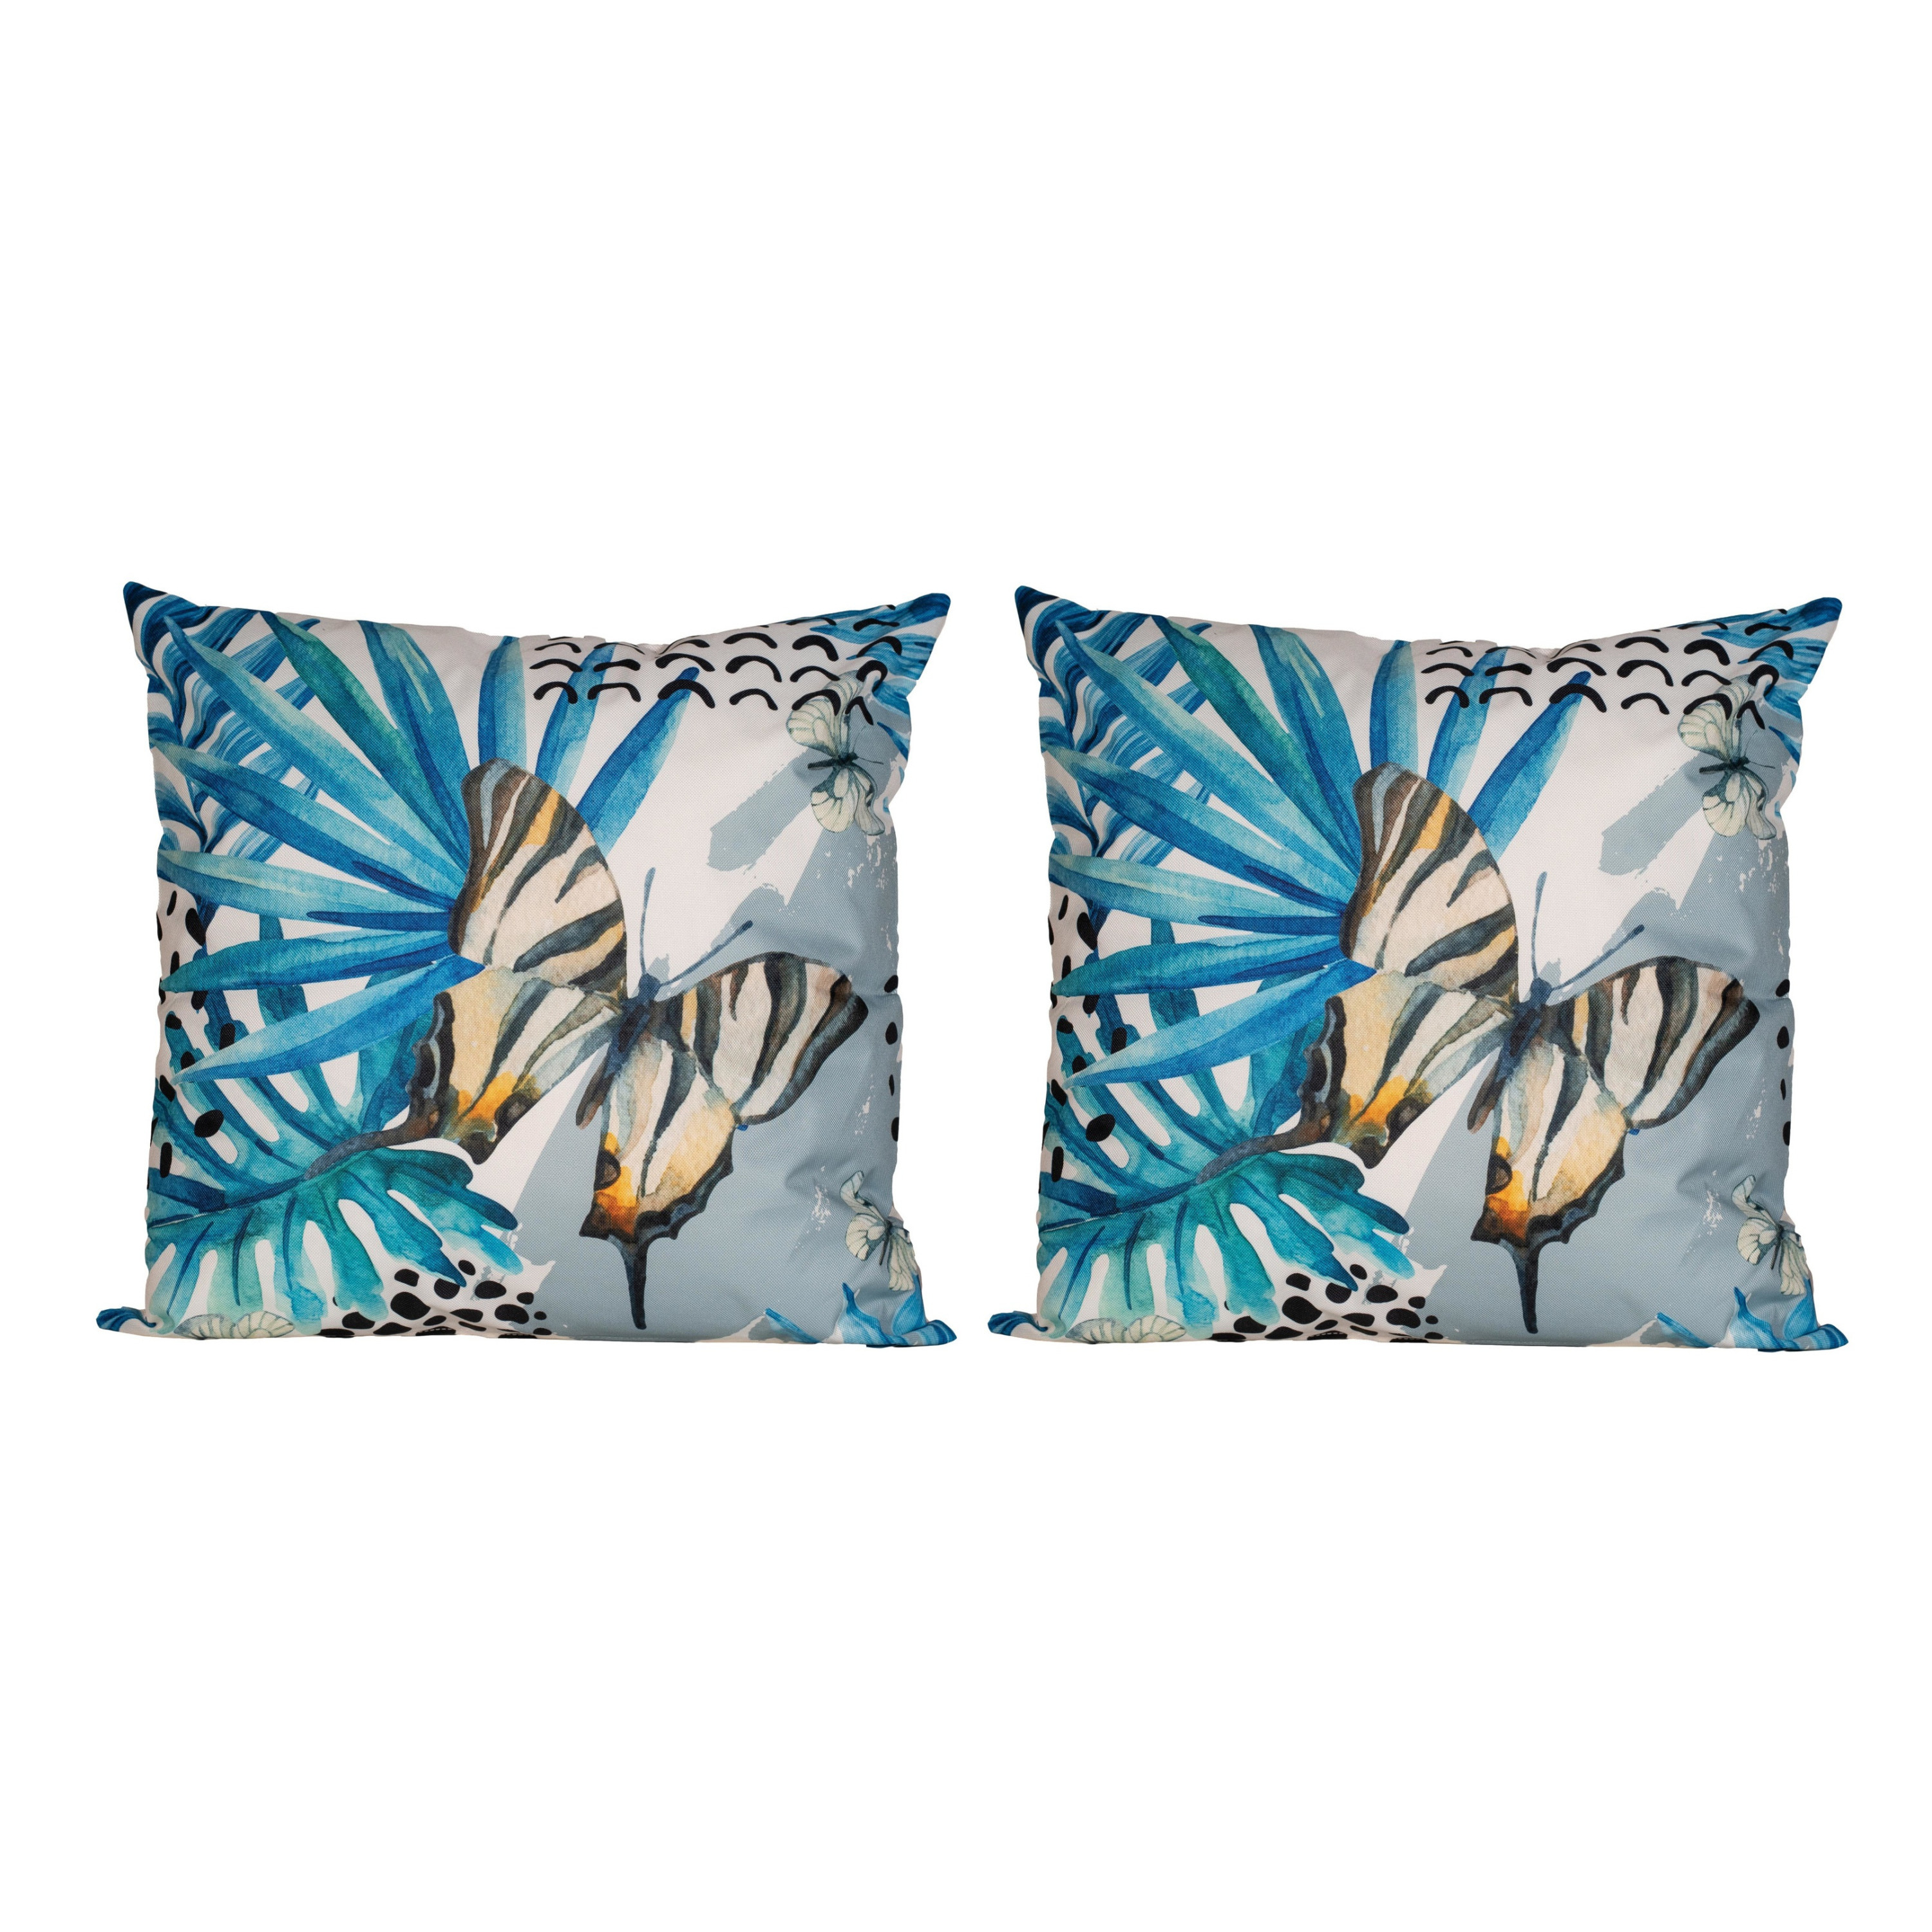 6x Bank-sier kussens met blauwe palm plant-bladeren print voor binnen en buiten 45 x 45 cm